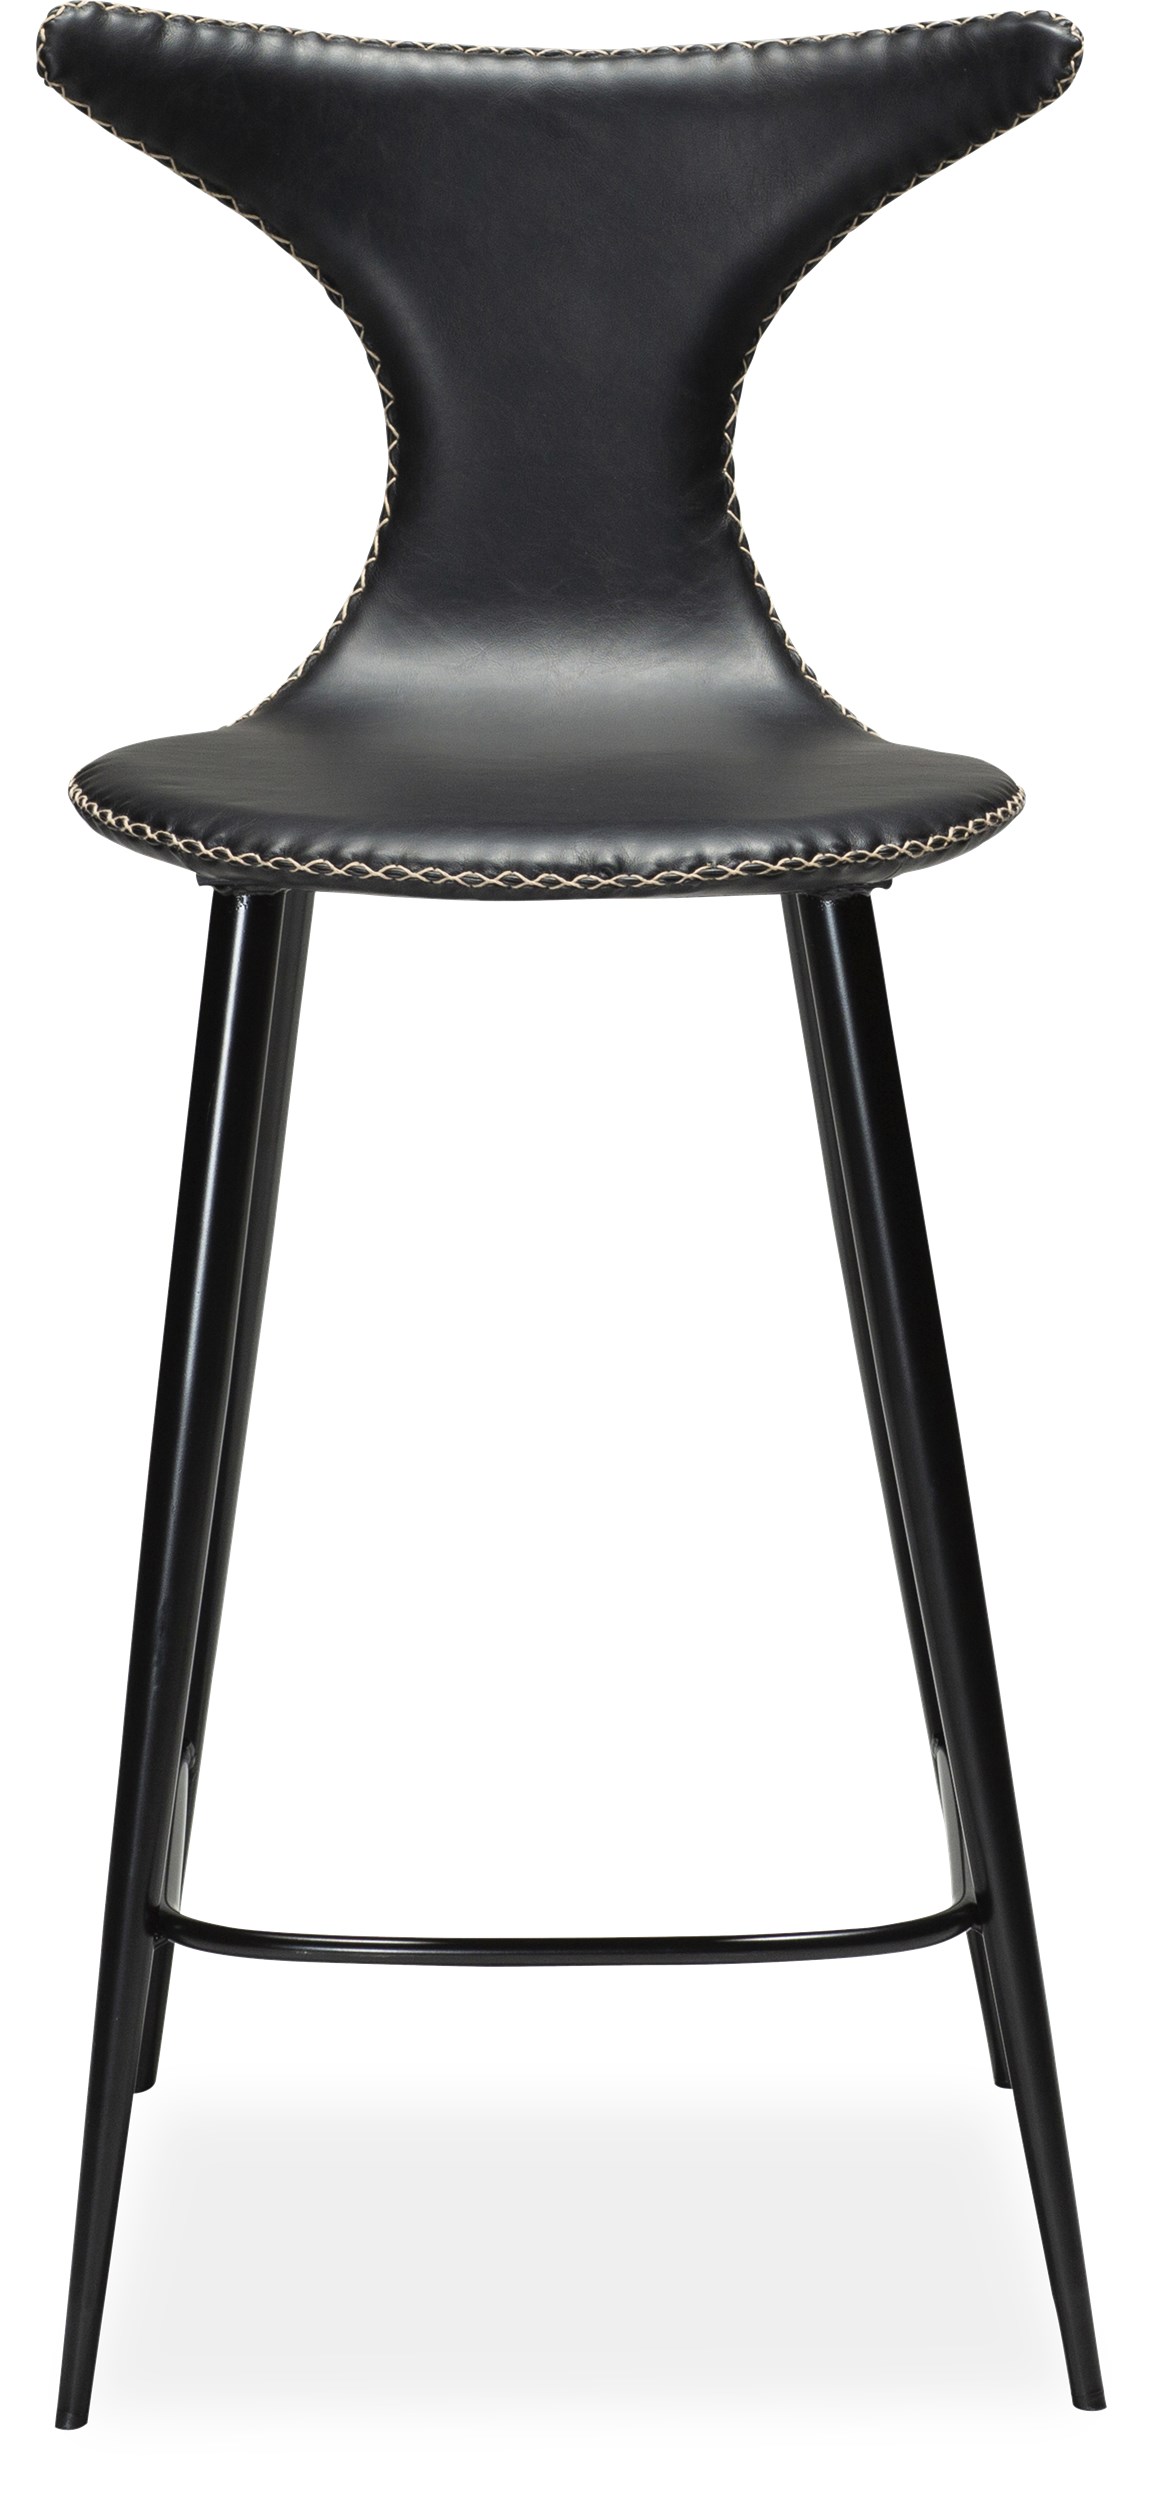 Dolphin Counterstol - sæde i sort vintage kunstlæder, med kontrastsyninger og runde ben i sortlakeret metal